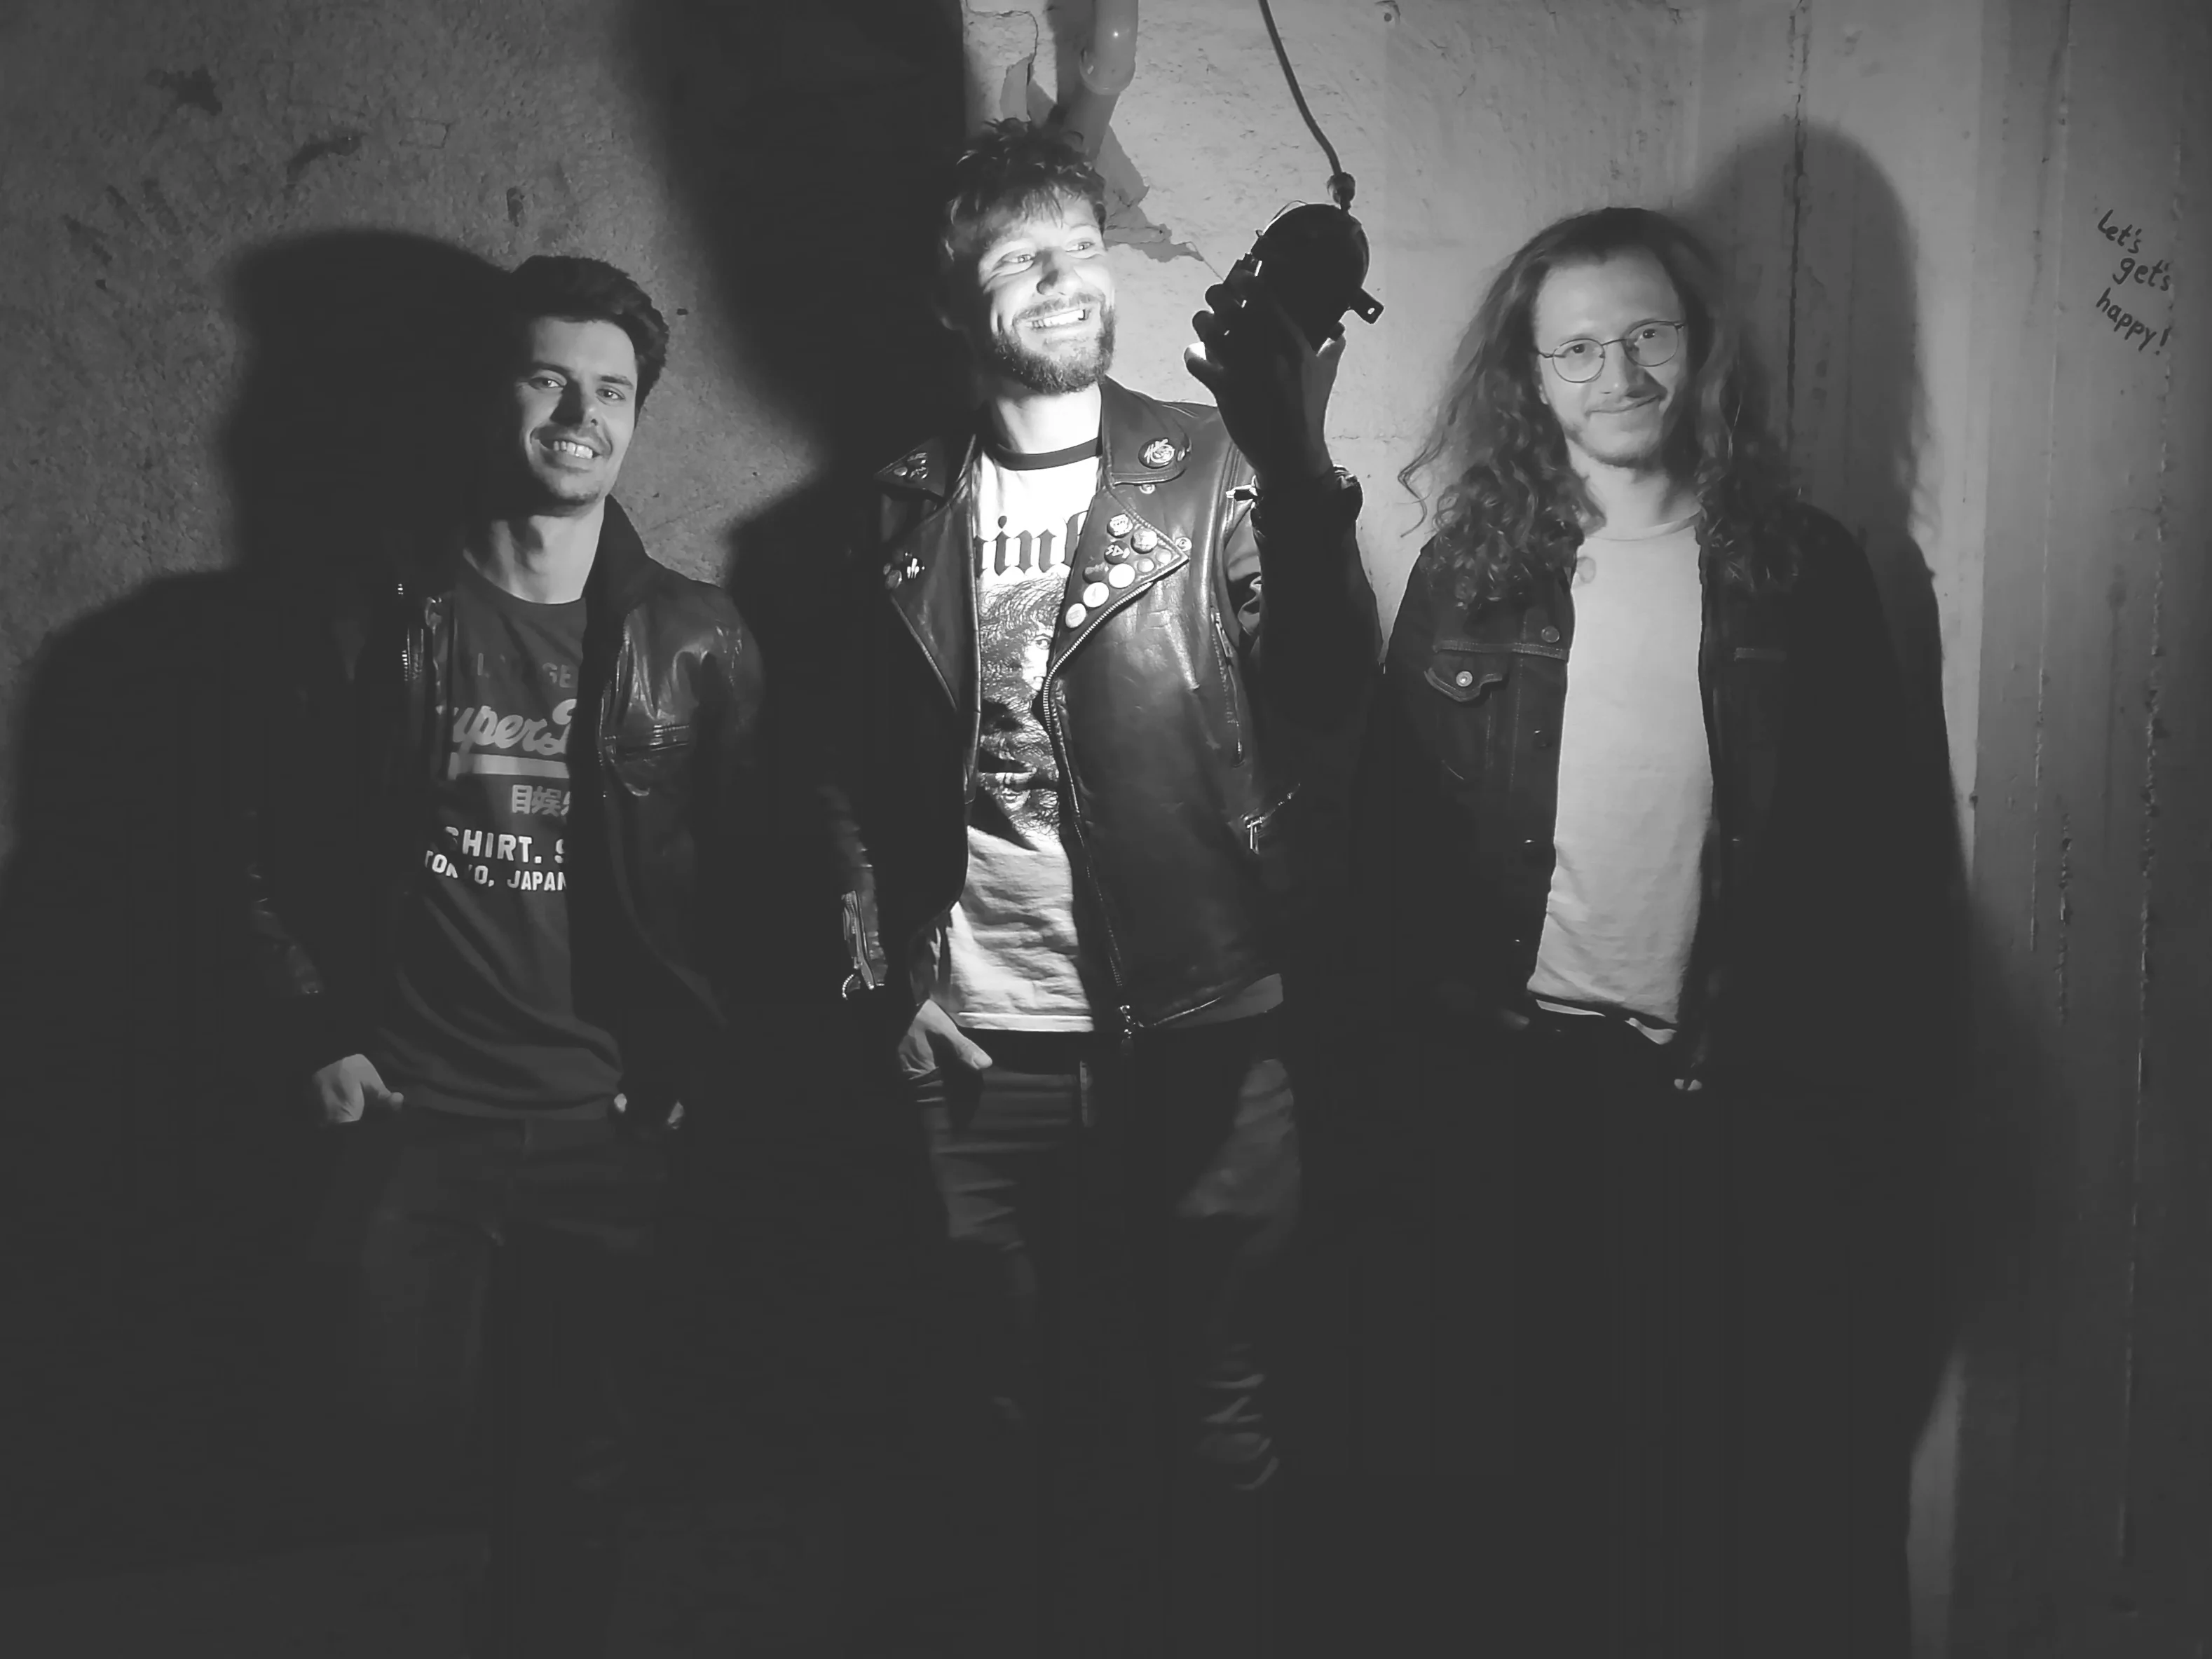 Bandfoto von Bad Age in schwarz/weiß.
Drei Männer stehen vor einer kahlen Wand. Beleuchtet von einer Kellerlampe, die von der Decke hängt und die der mittlere in der Hand hält und zu sich richtet.